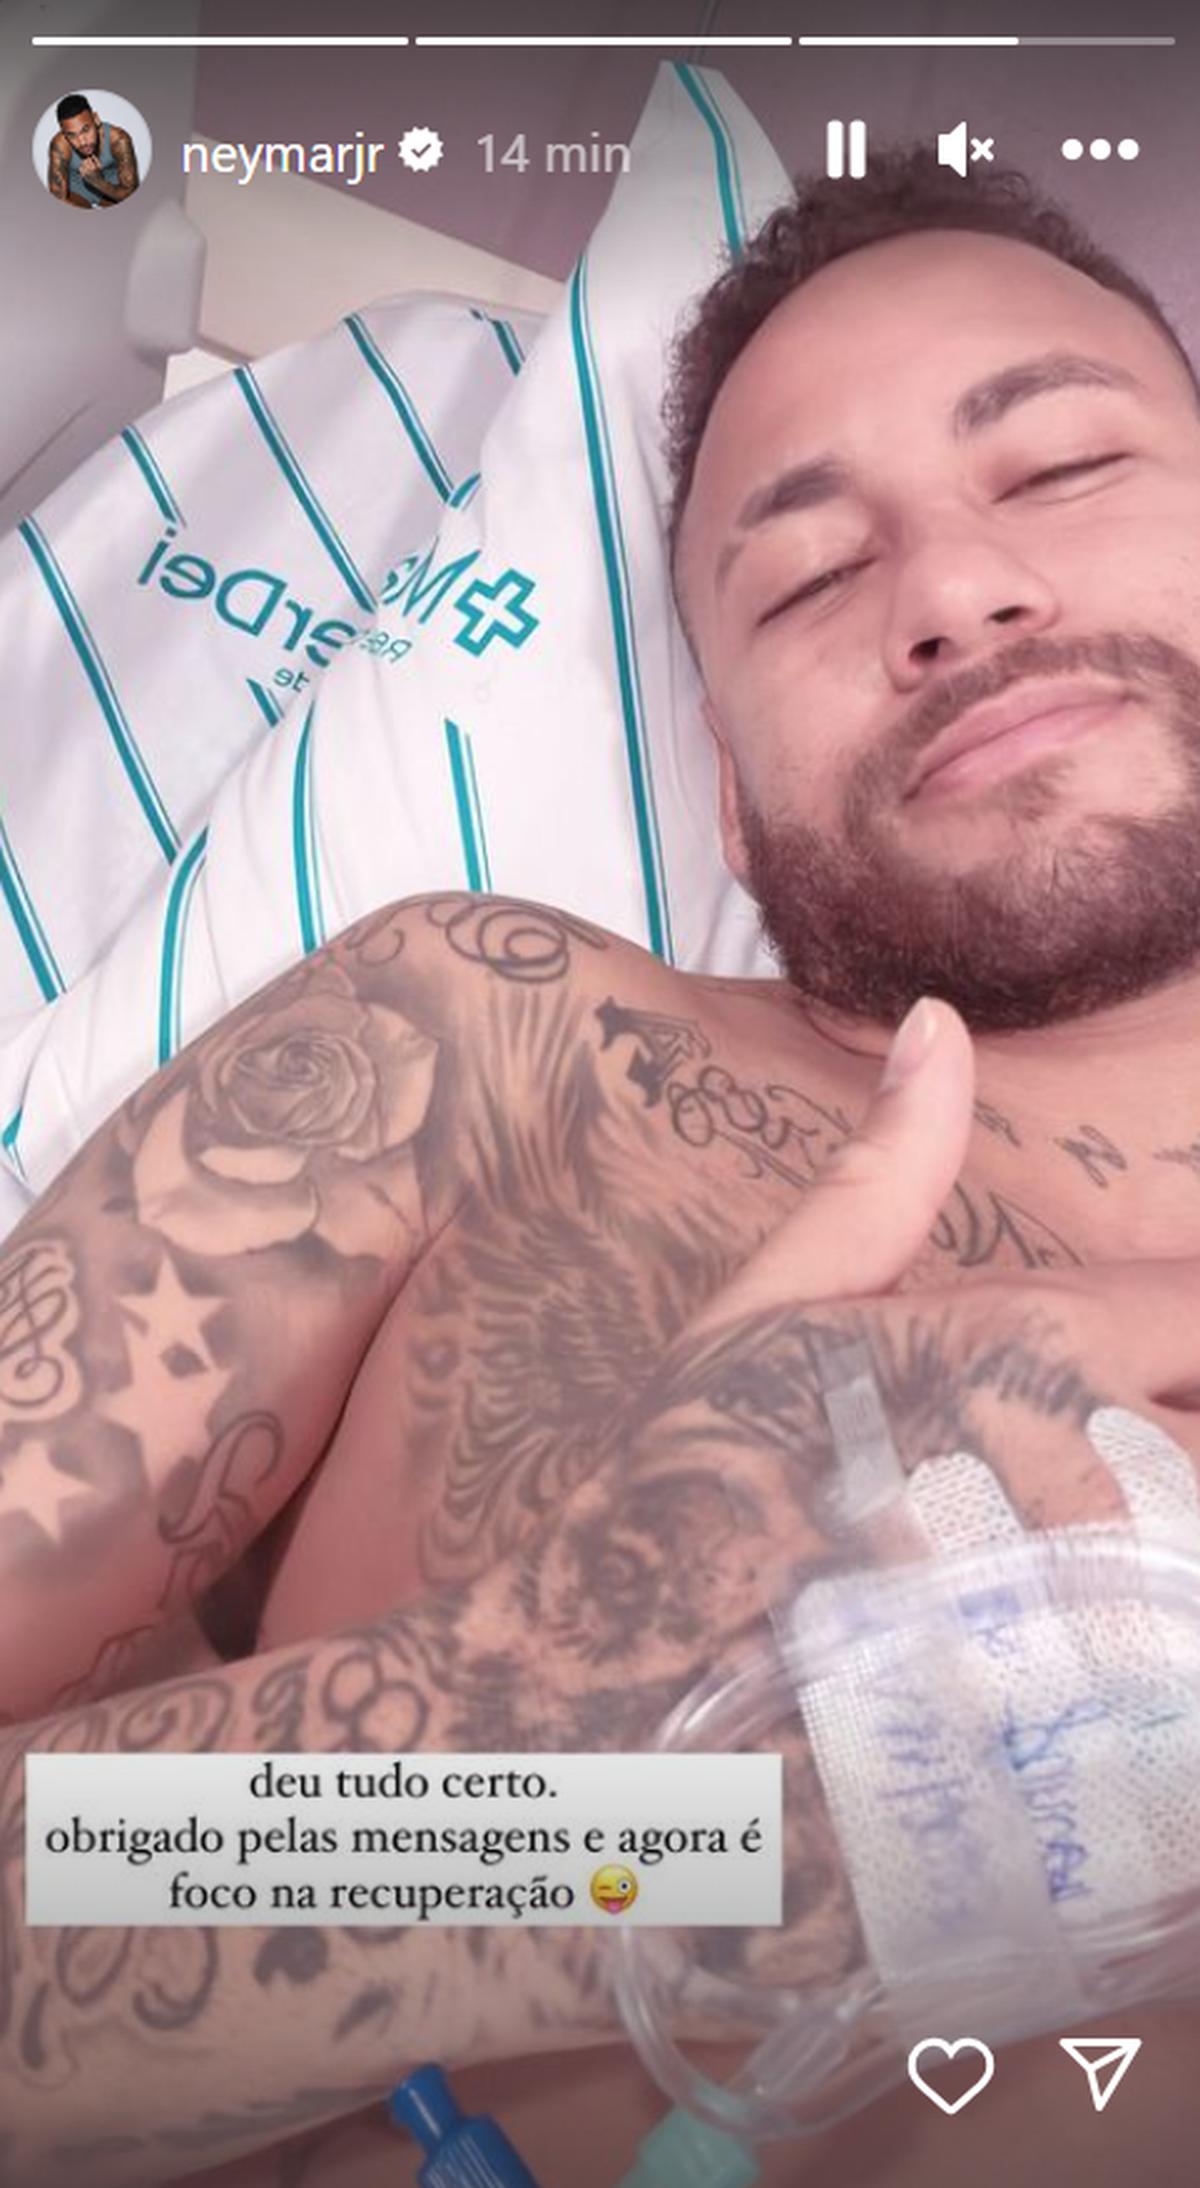 Neymar posteó una imagen en redes sociales tras la operación. | Especial